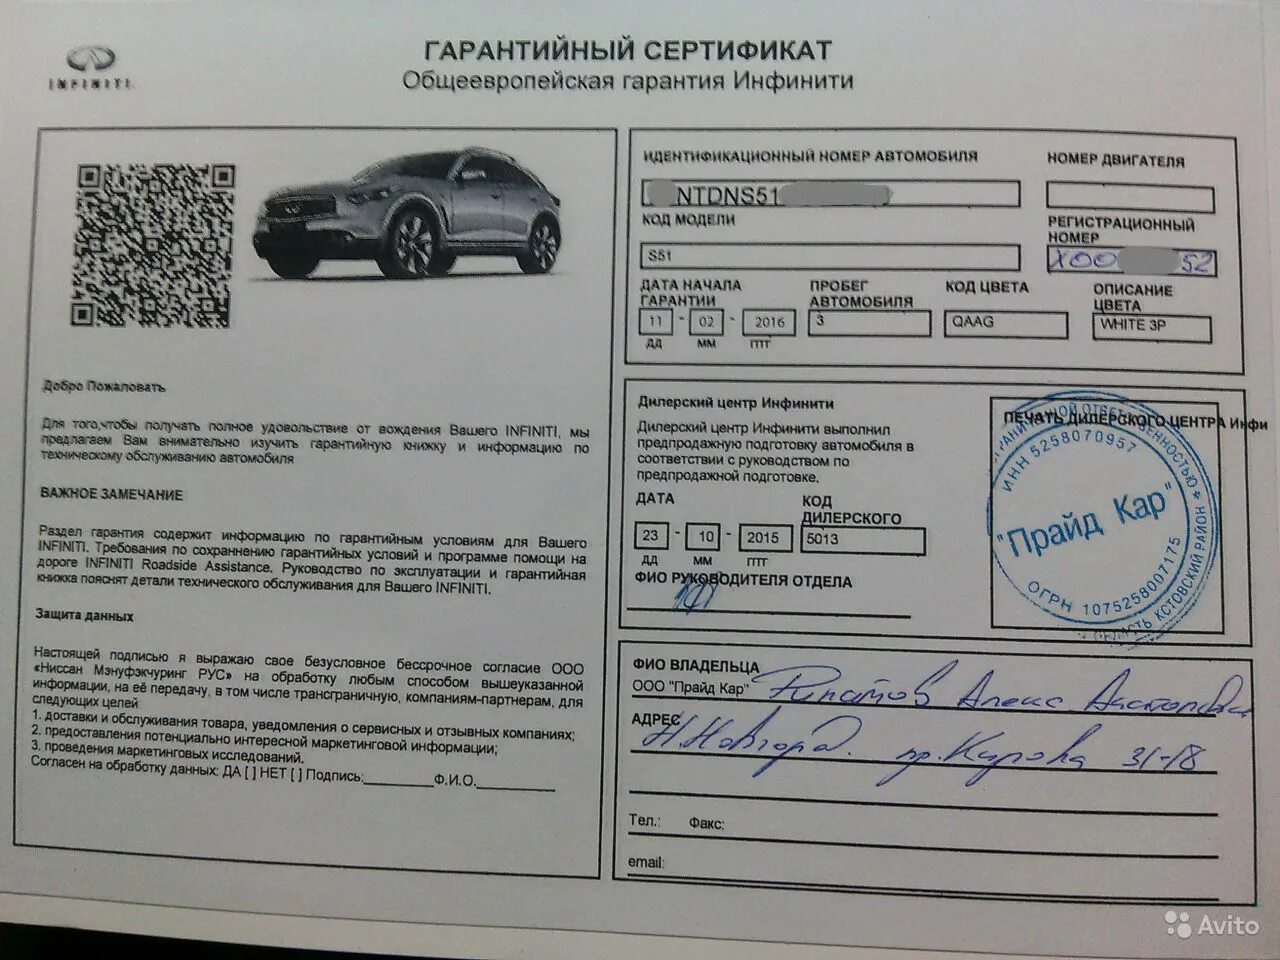 Гарантийный случай автомобиля. Сертификат гарантийный авто.